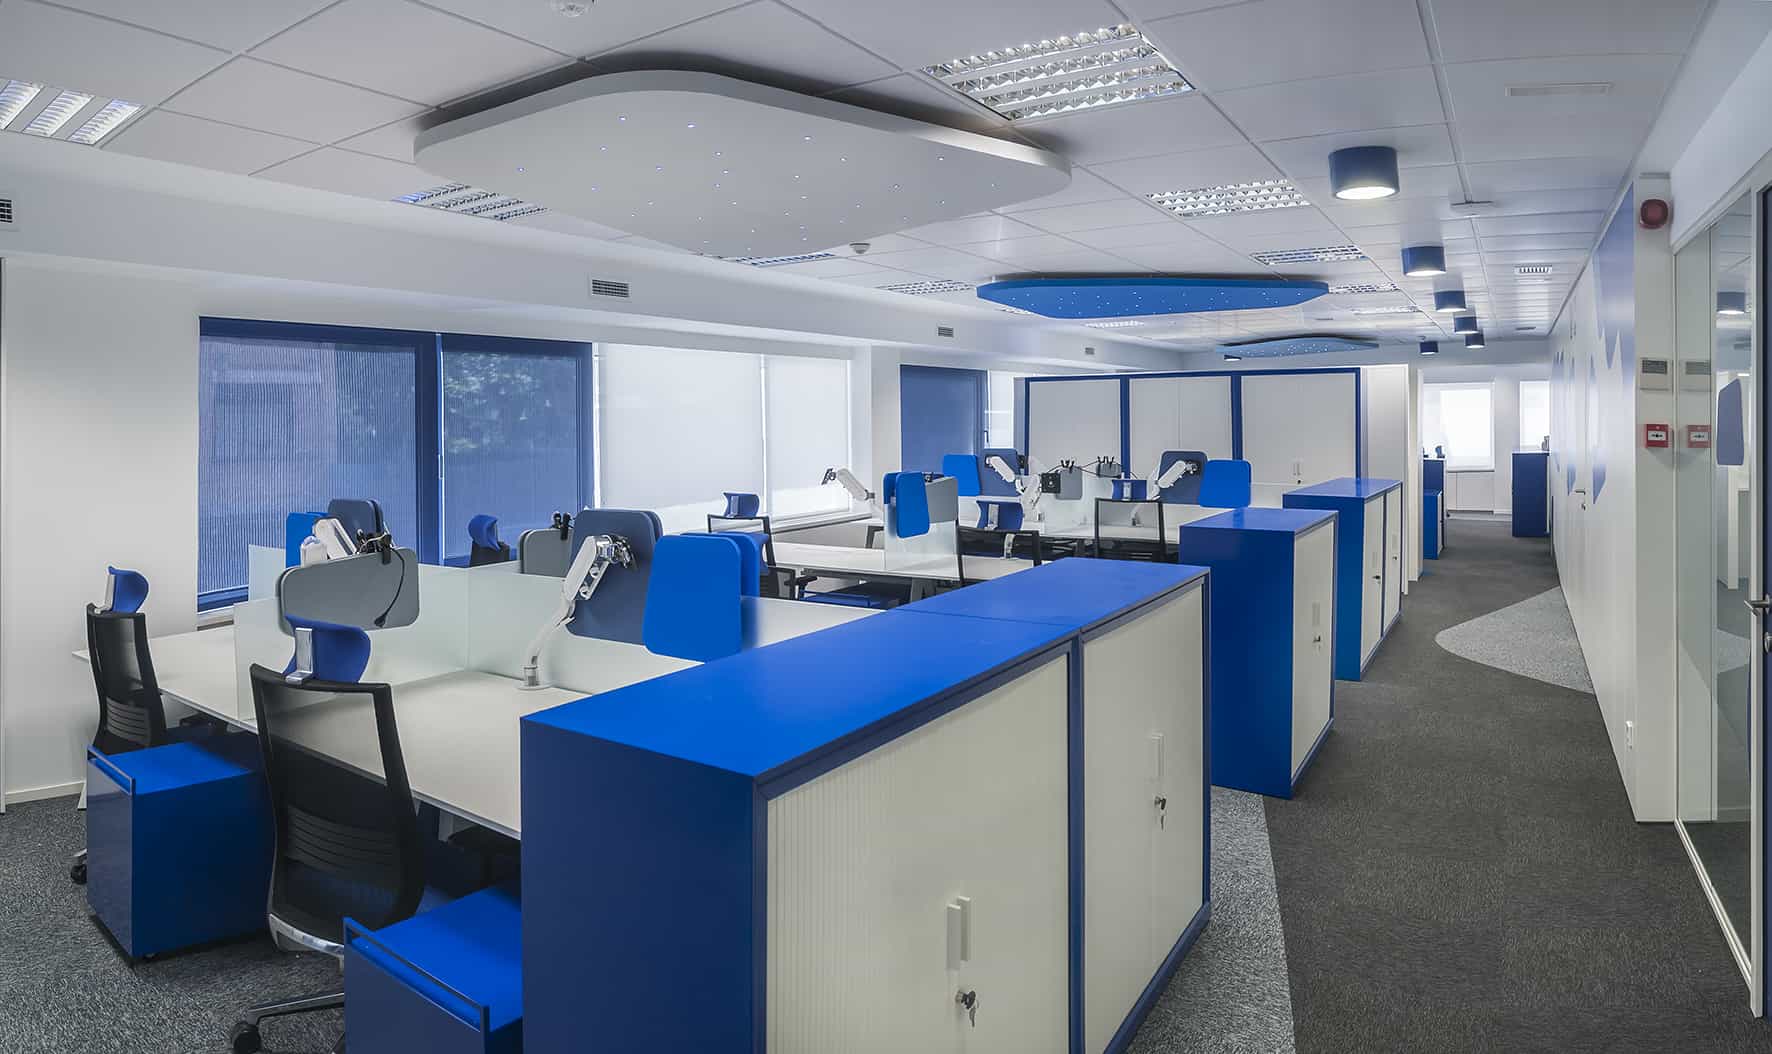 Philip Morris_Galería_zona de trabajo con puestos operativos en color azul